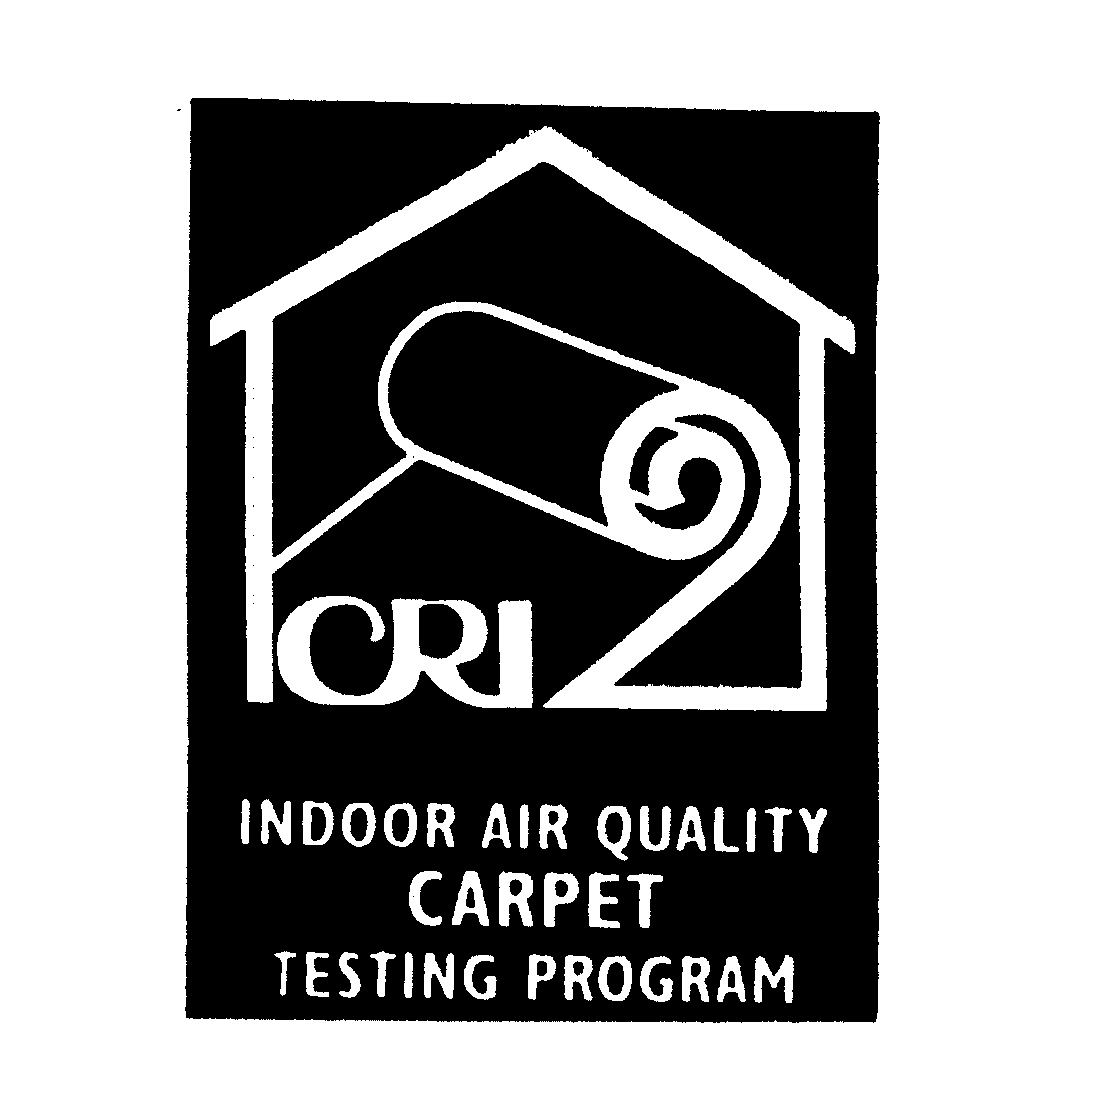  INDOOR AIR QUALITY CARPET TESTING PROGRAM CRI